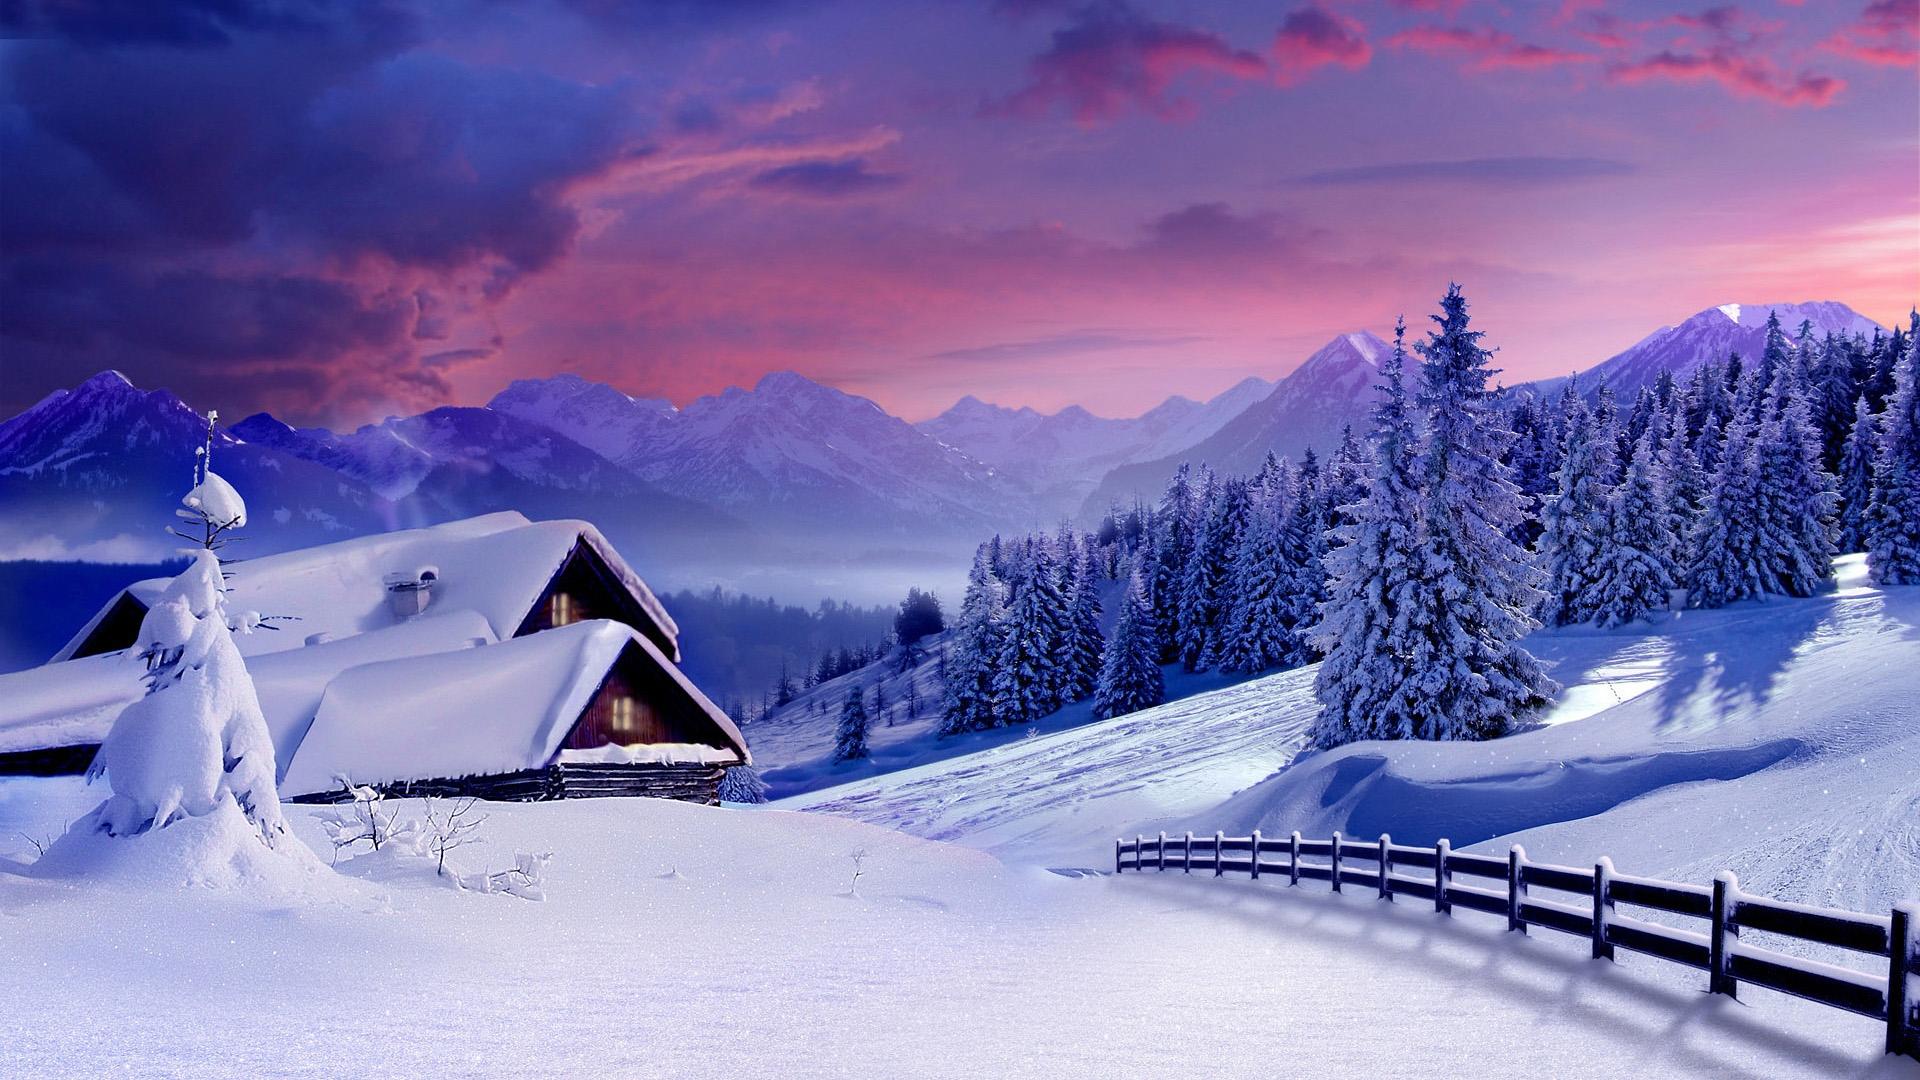 Картинки с добрым утром зимние со снегом красивые (58 фото) » Картинки и  статусы про окружающий мир вокруг